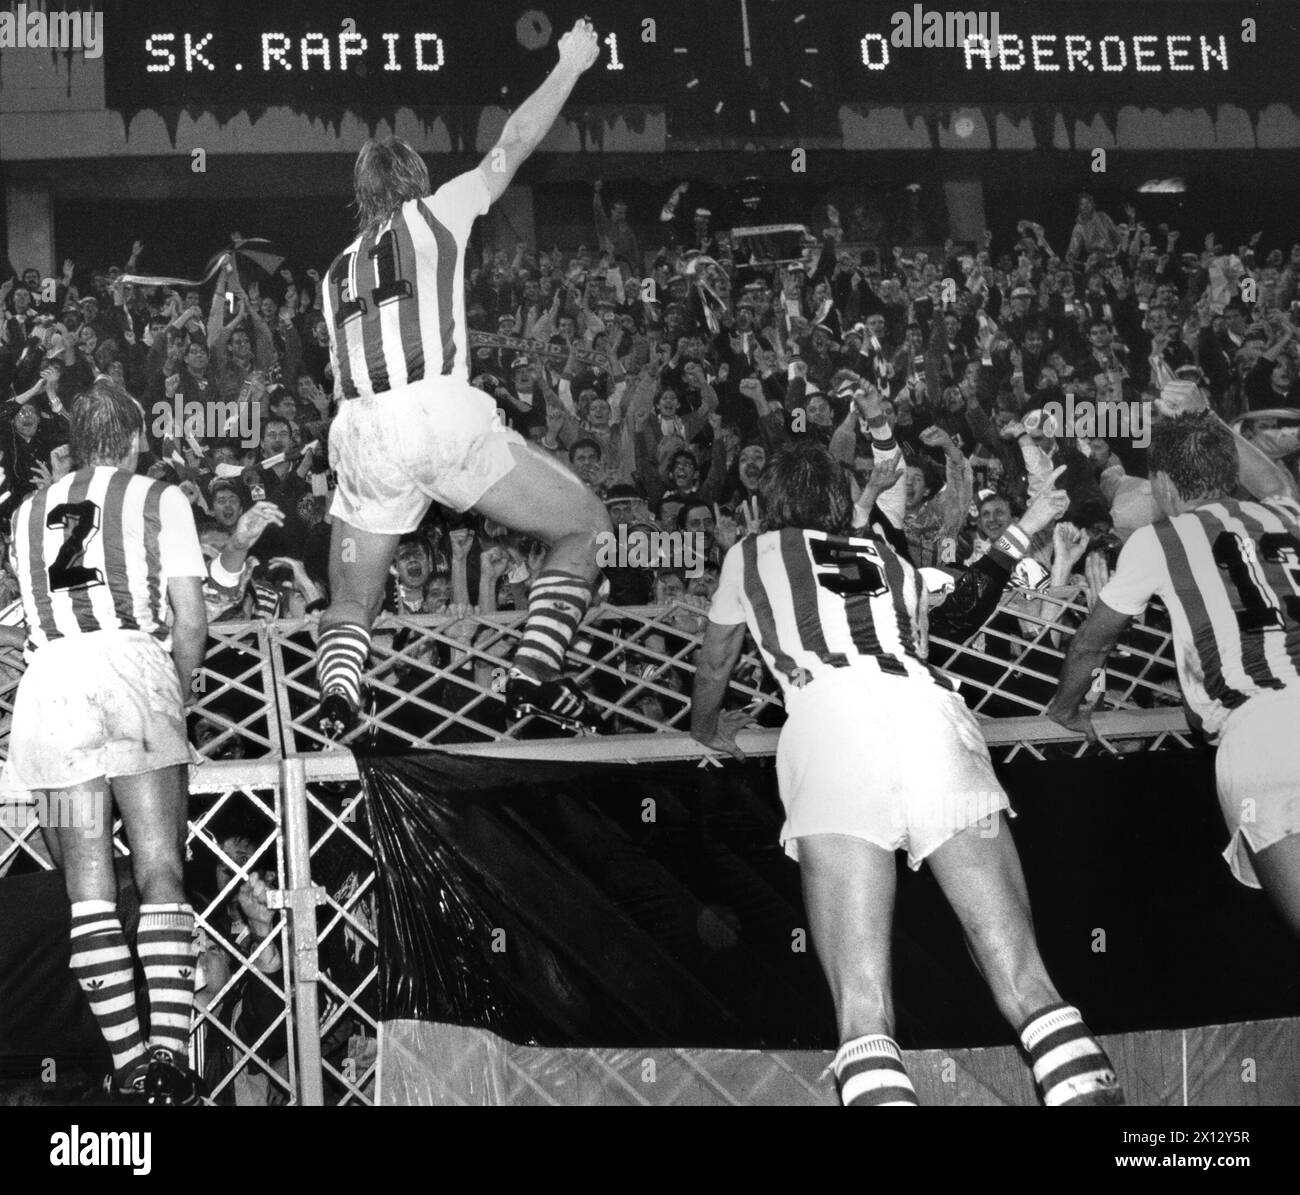 Vienna il 27 settembre 1989: Giocatori e tifosi rapidi tifosi tifosi esultano dopo la vittoria 1:0 del Rapid contro l'Aberdeen alla Coppa UEFA di Vienna. - 19860527 PD0015 - Rechteinfo: Diritti gestiti (RM) Foto Stock